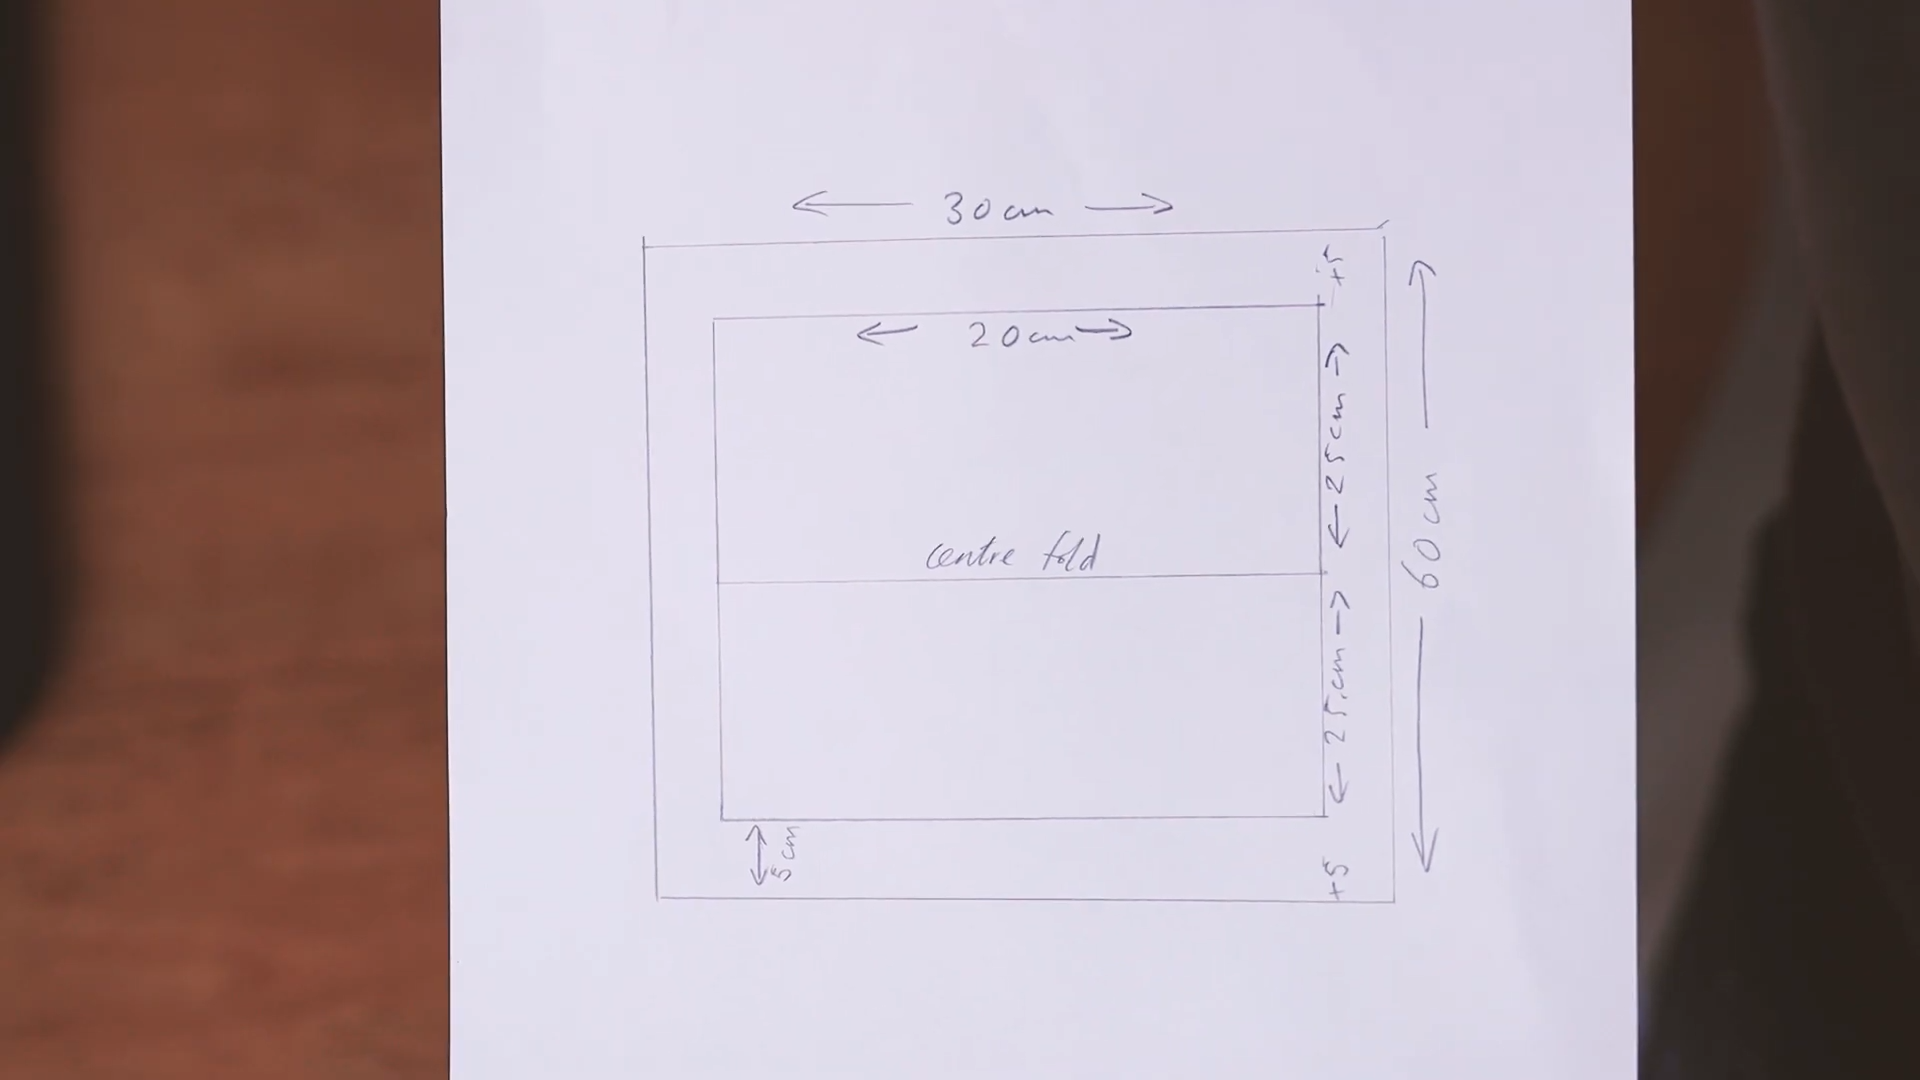 Drawn plan of van door pockets